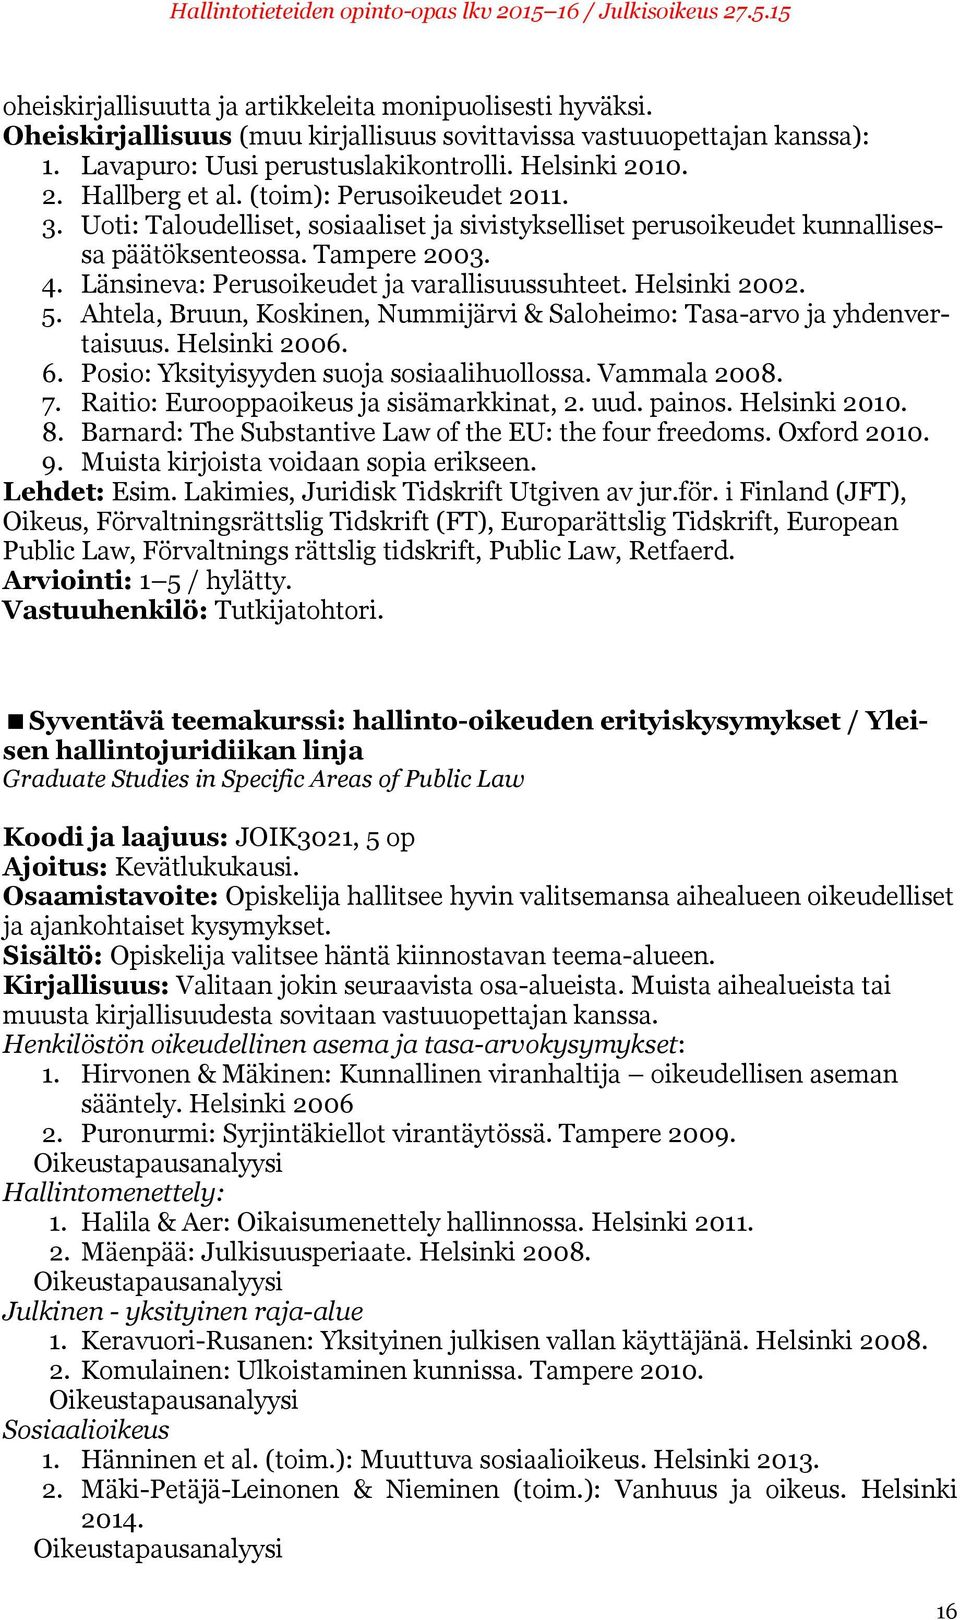 Länsineva: Perusoikeudet ja varallisuussuhteet. Helsinki 2002. 5. Ahtela, Bruun, Koskinen, Nummijärvi & Saloheimo: Tasa-arvo ja yhdenvertaisuus. Helsinki 2006. 6.